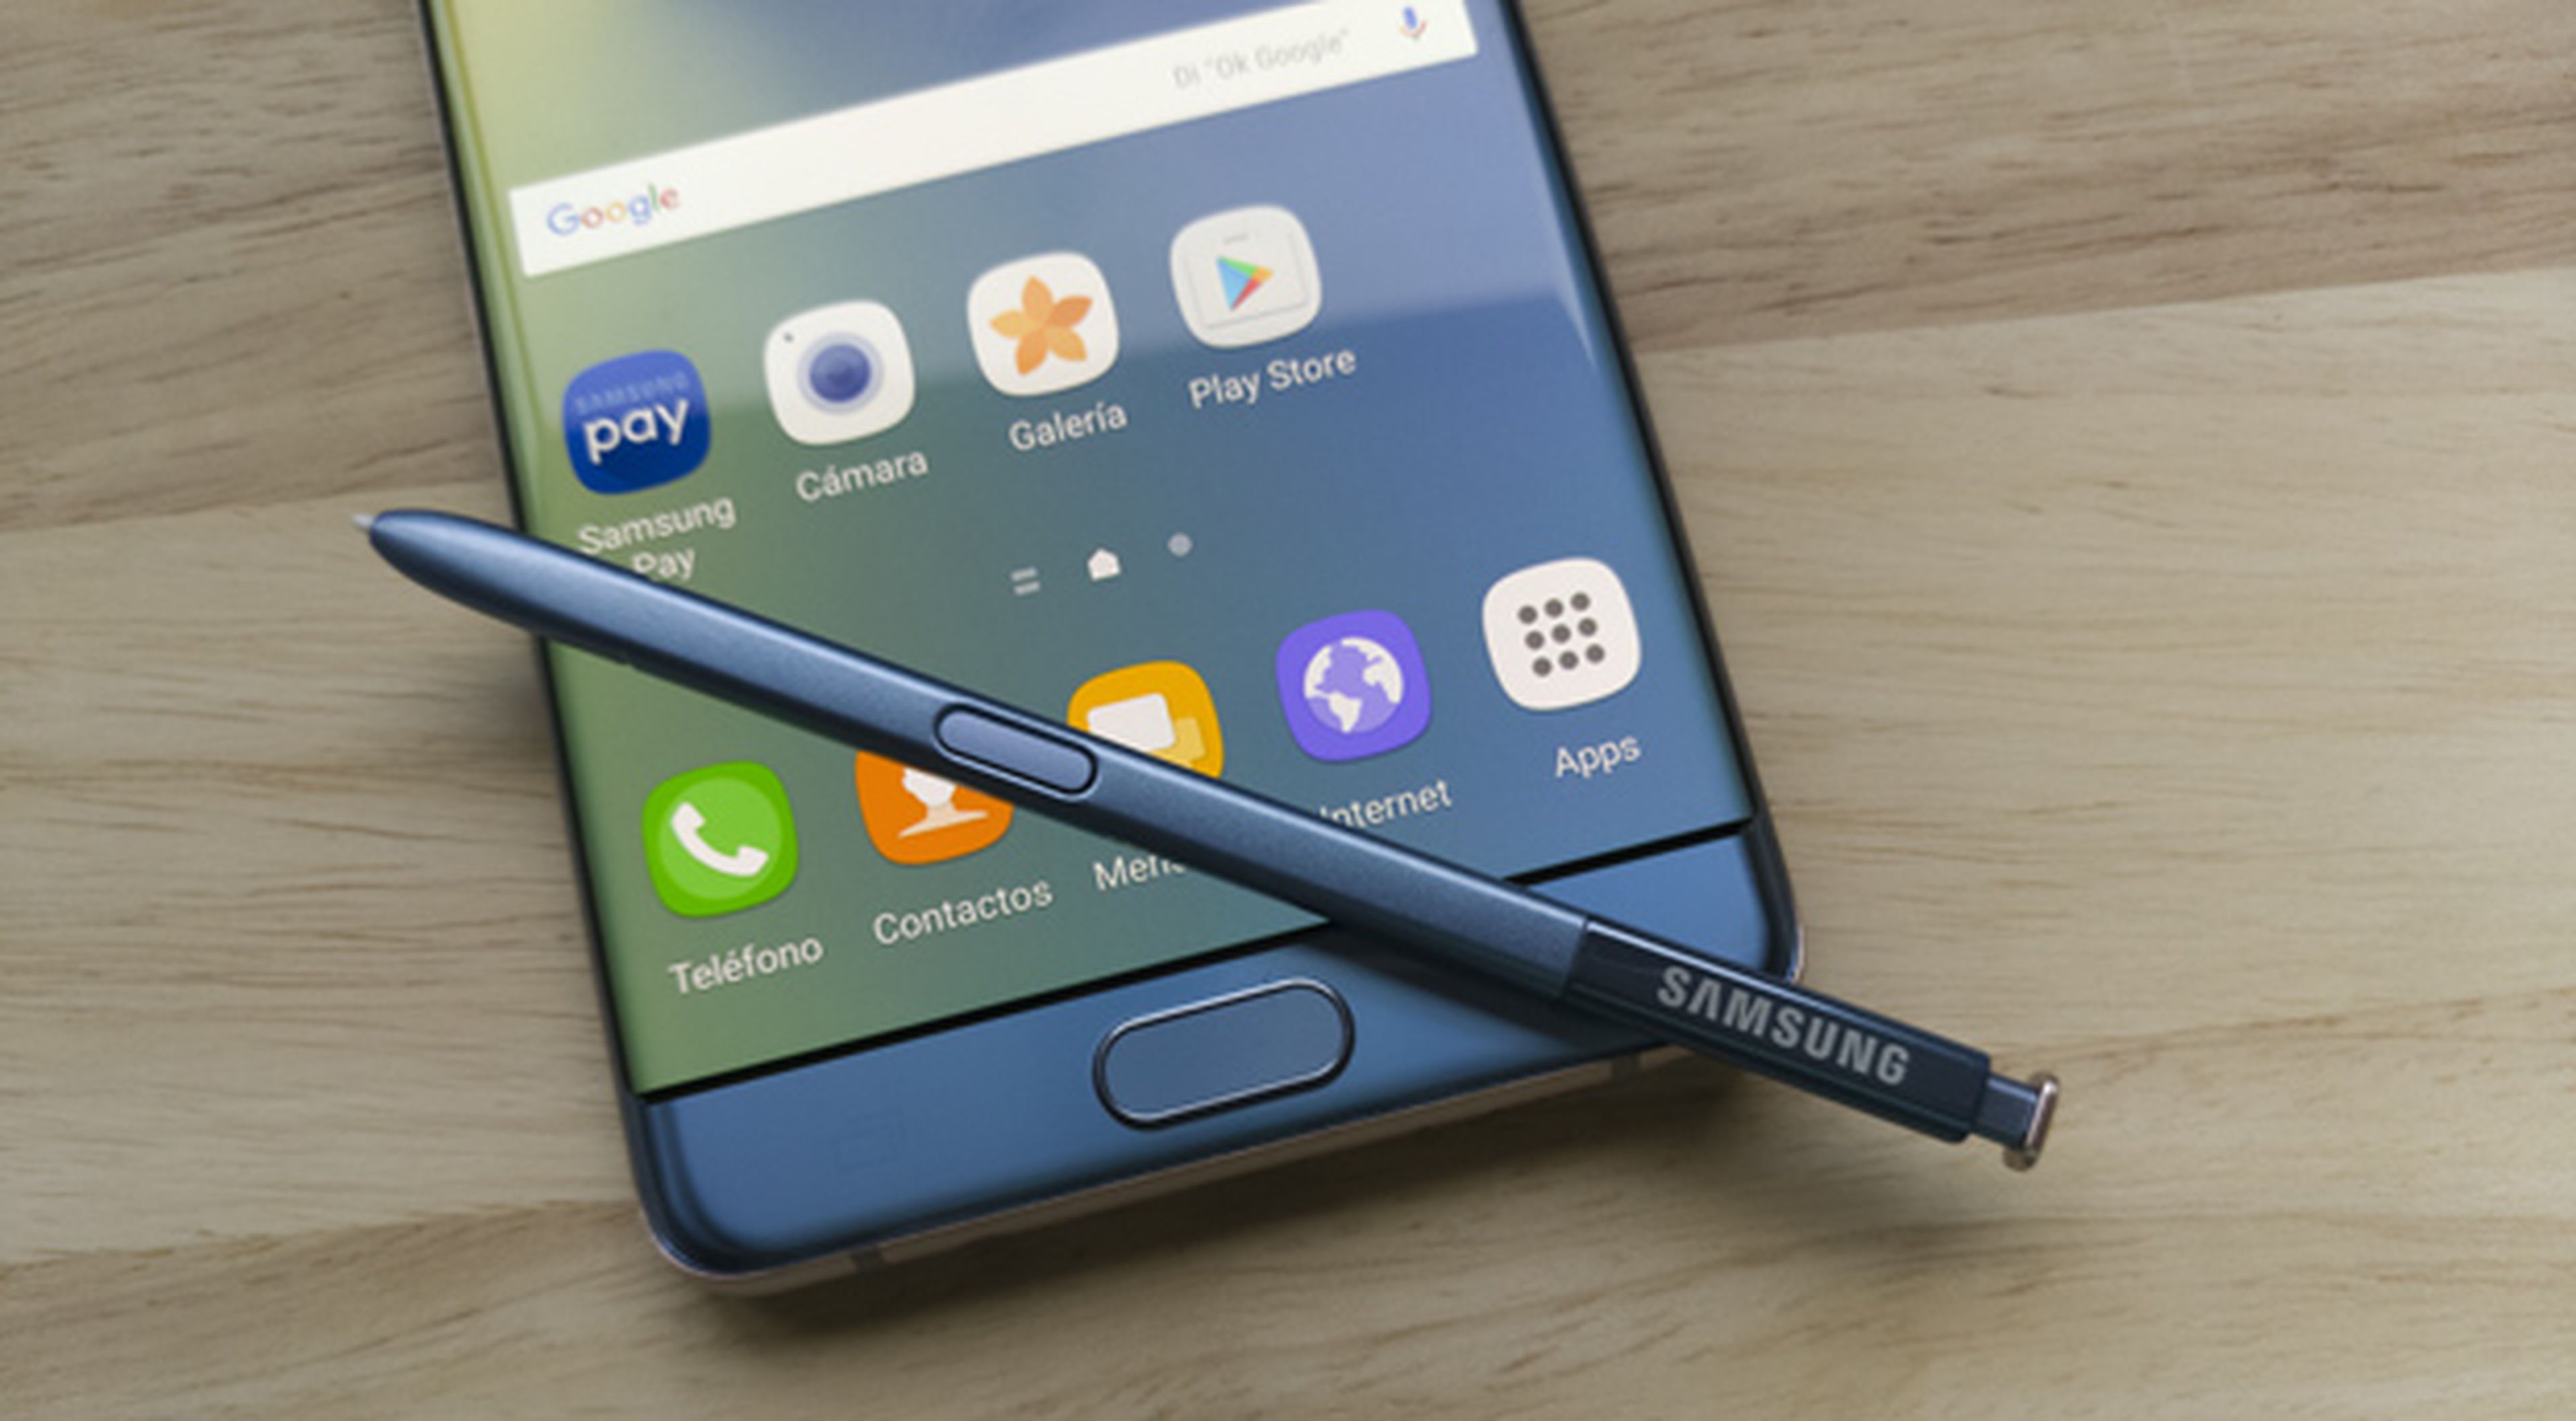 Samsung Galaxy Note 7, toda la información del móvil más potente con stylus